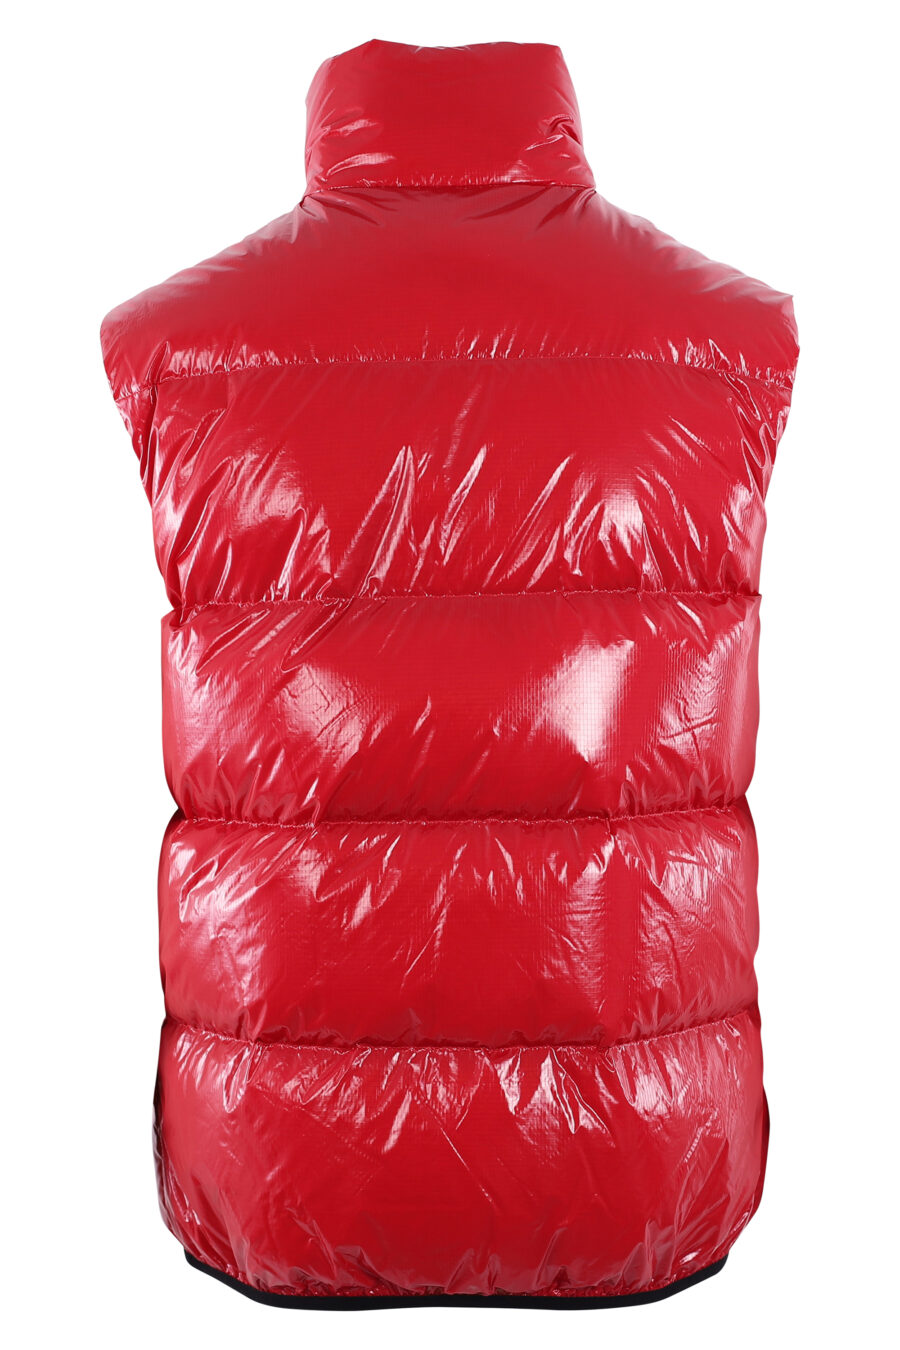 Gilet matelassé rouge avec logo noir - IMG 2879